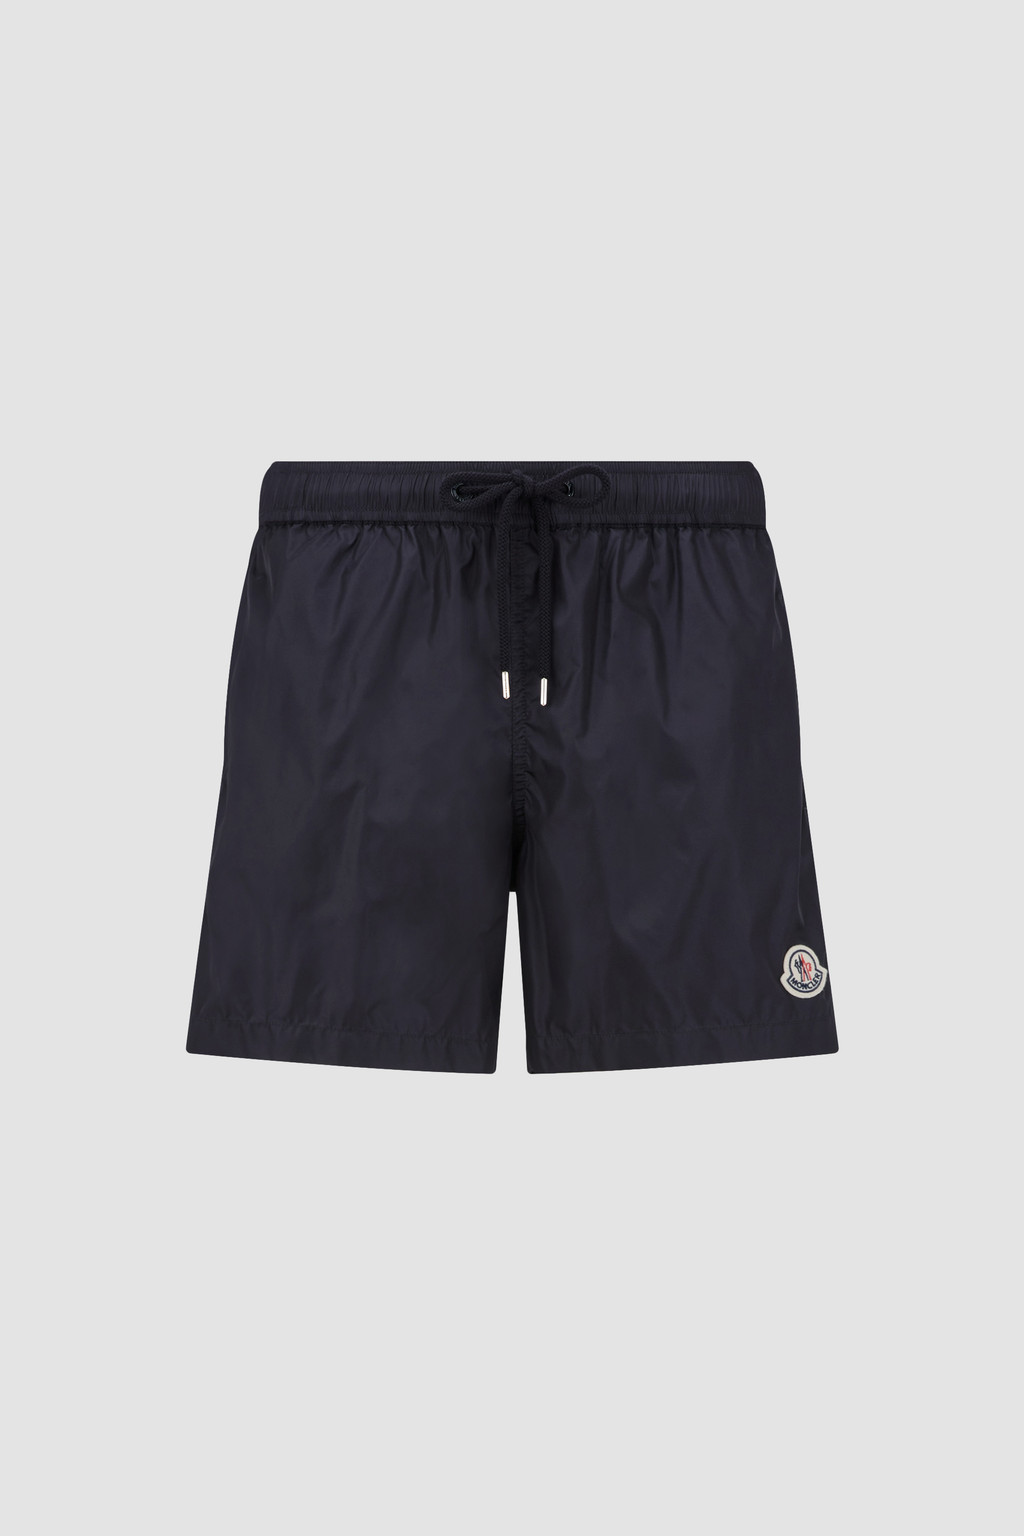 Swimwear for Men - Swimming Trunks & Shorts | Moncler US